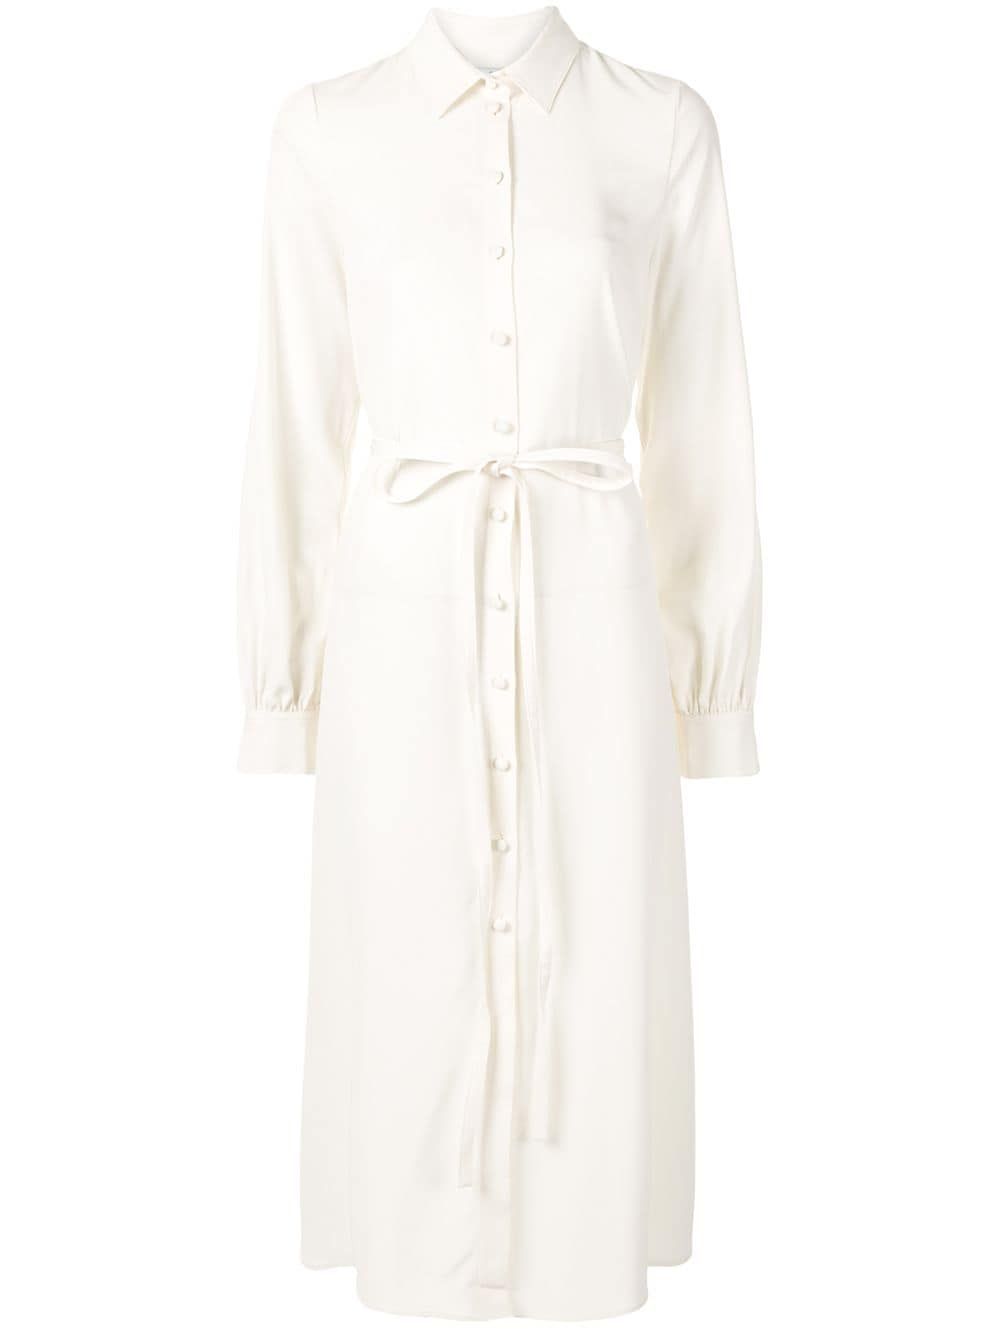 Meghan Markle Wears Crisp White Shirt Dress for Johannesburg Visit